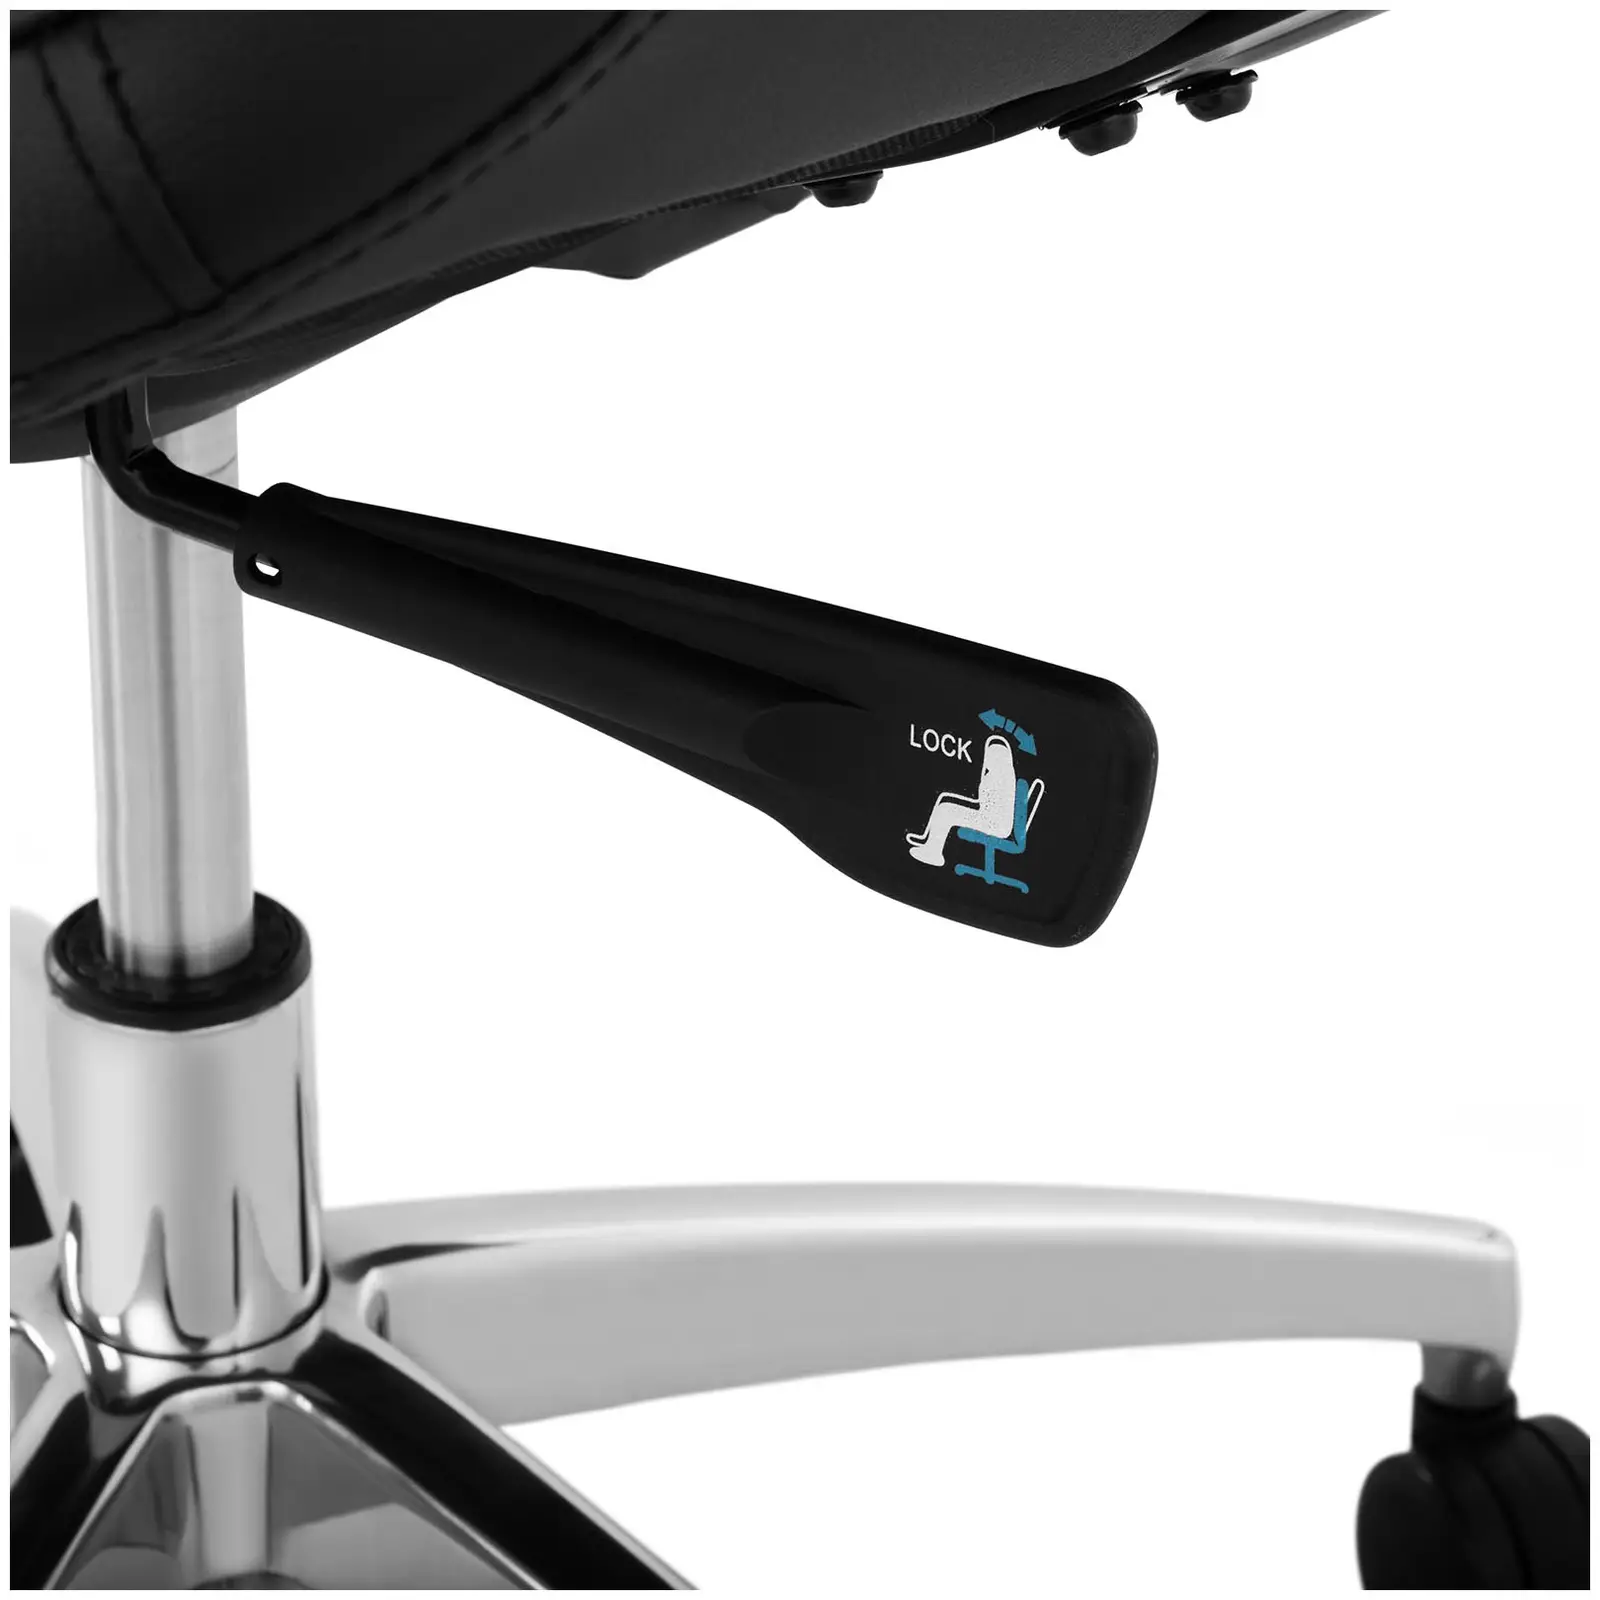 Ocasión Silla de escritorio - silla de dirección - cuero sintético - cromo - 150 kg